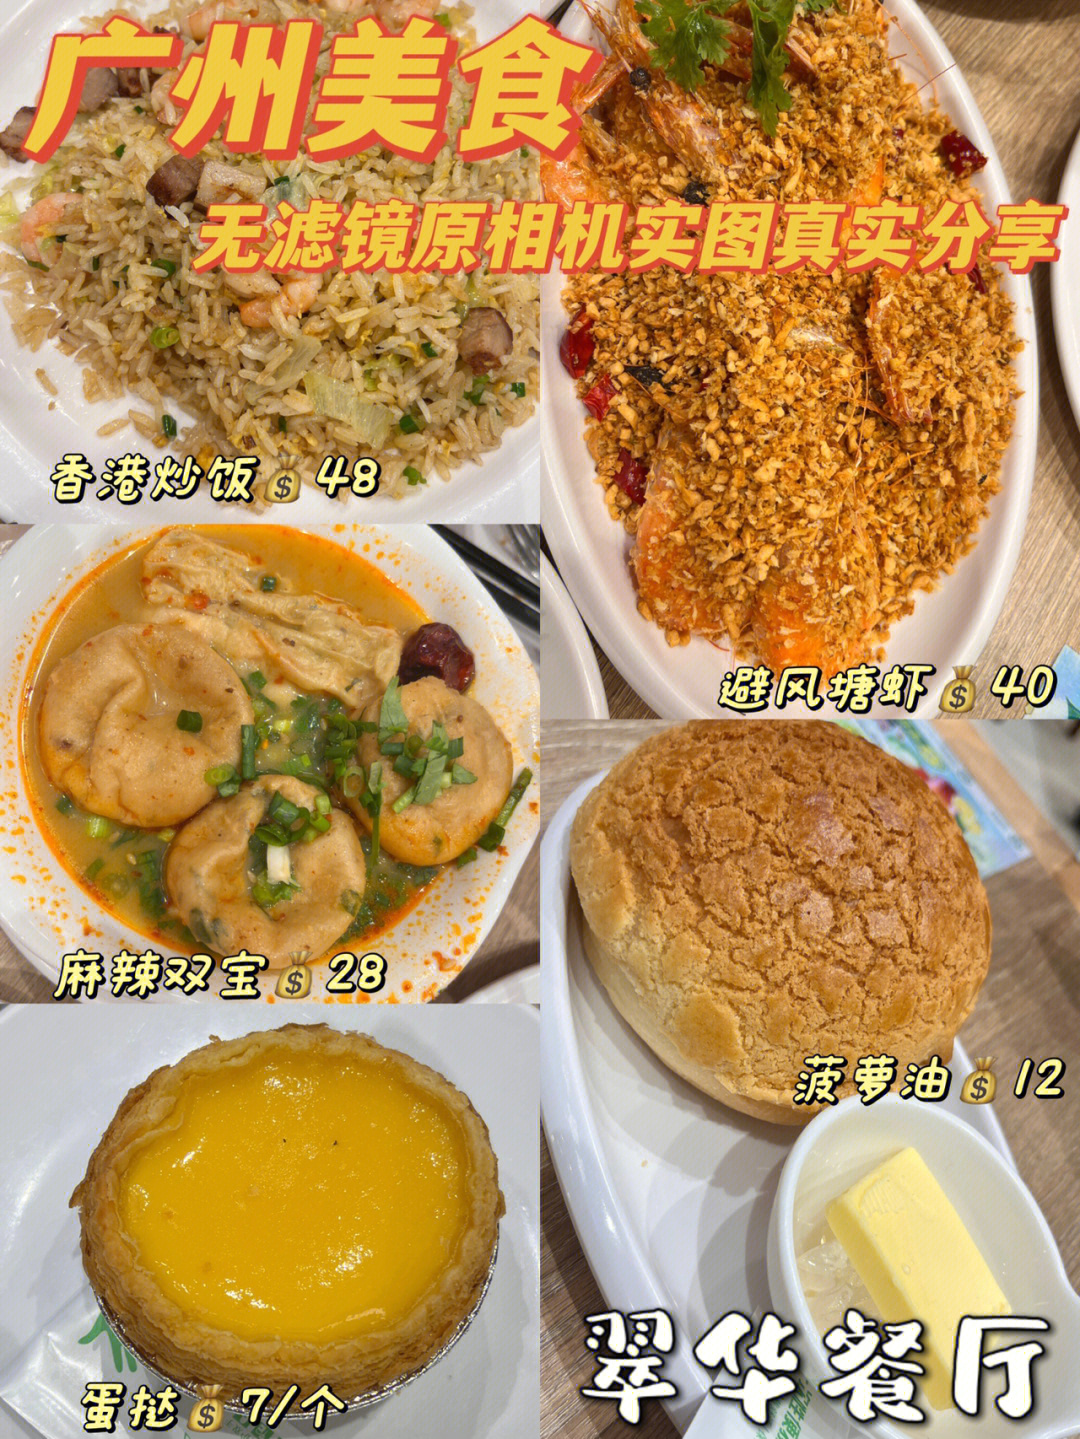 翠华餐厅菜单图片